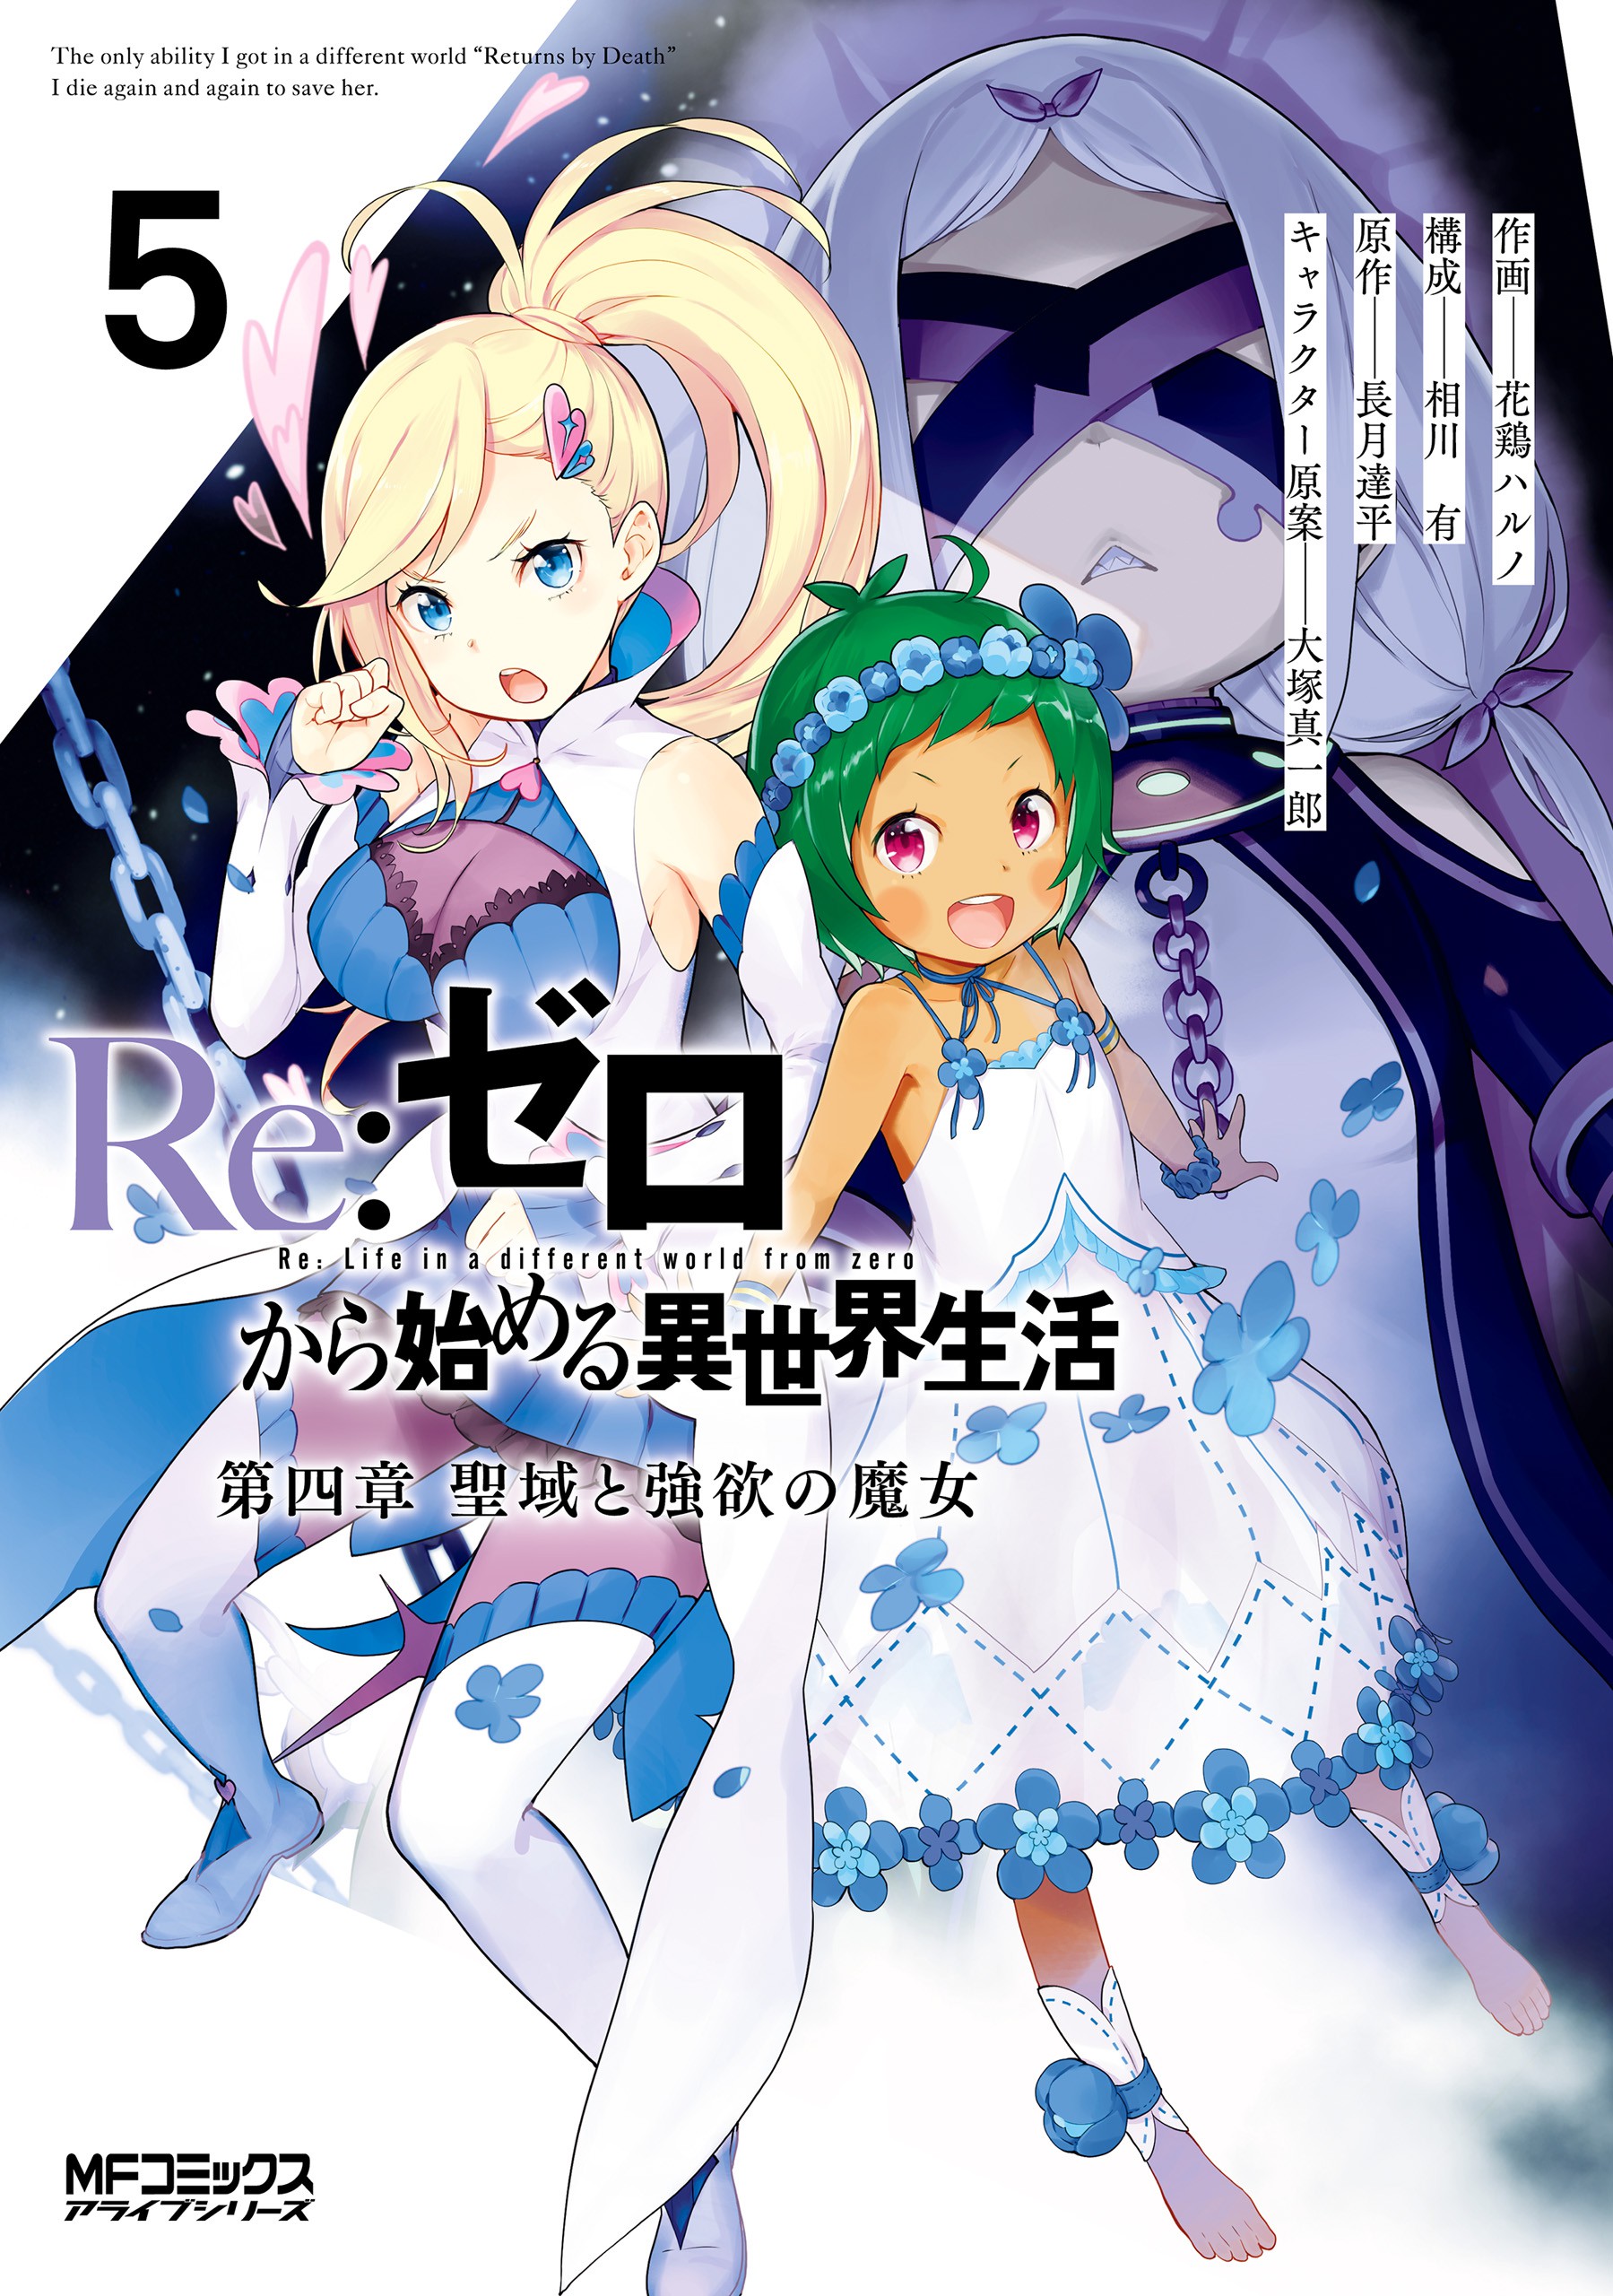 Re:Zero kara Hajimeru Isekai Seikatsu Review – PyraXadon's Anime